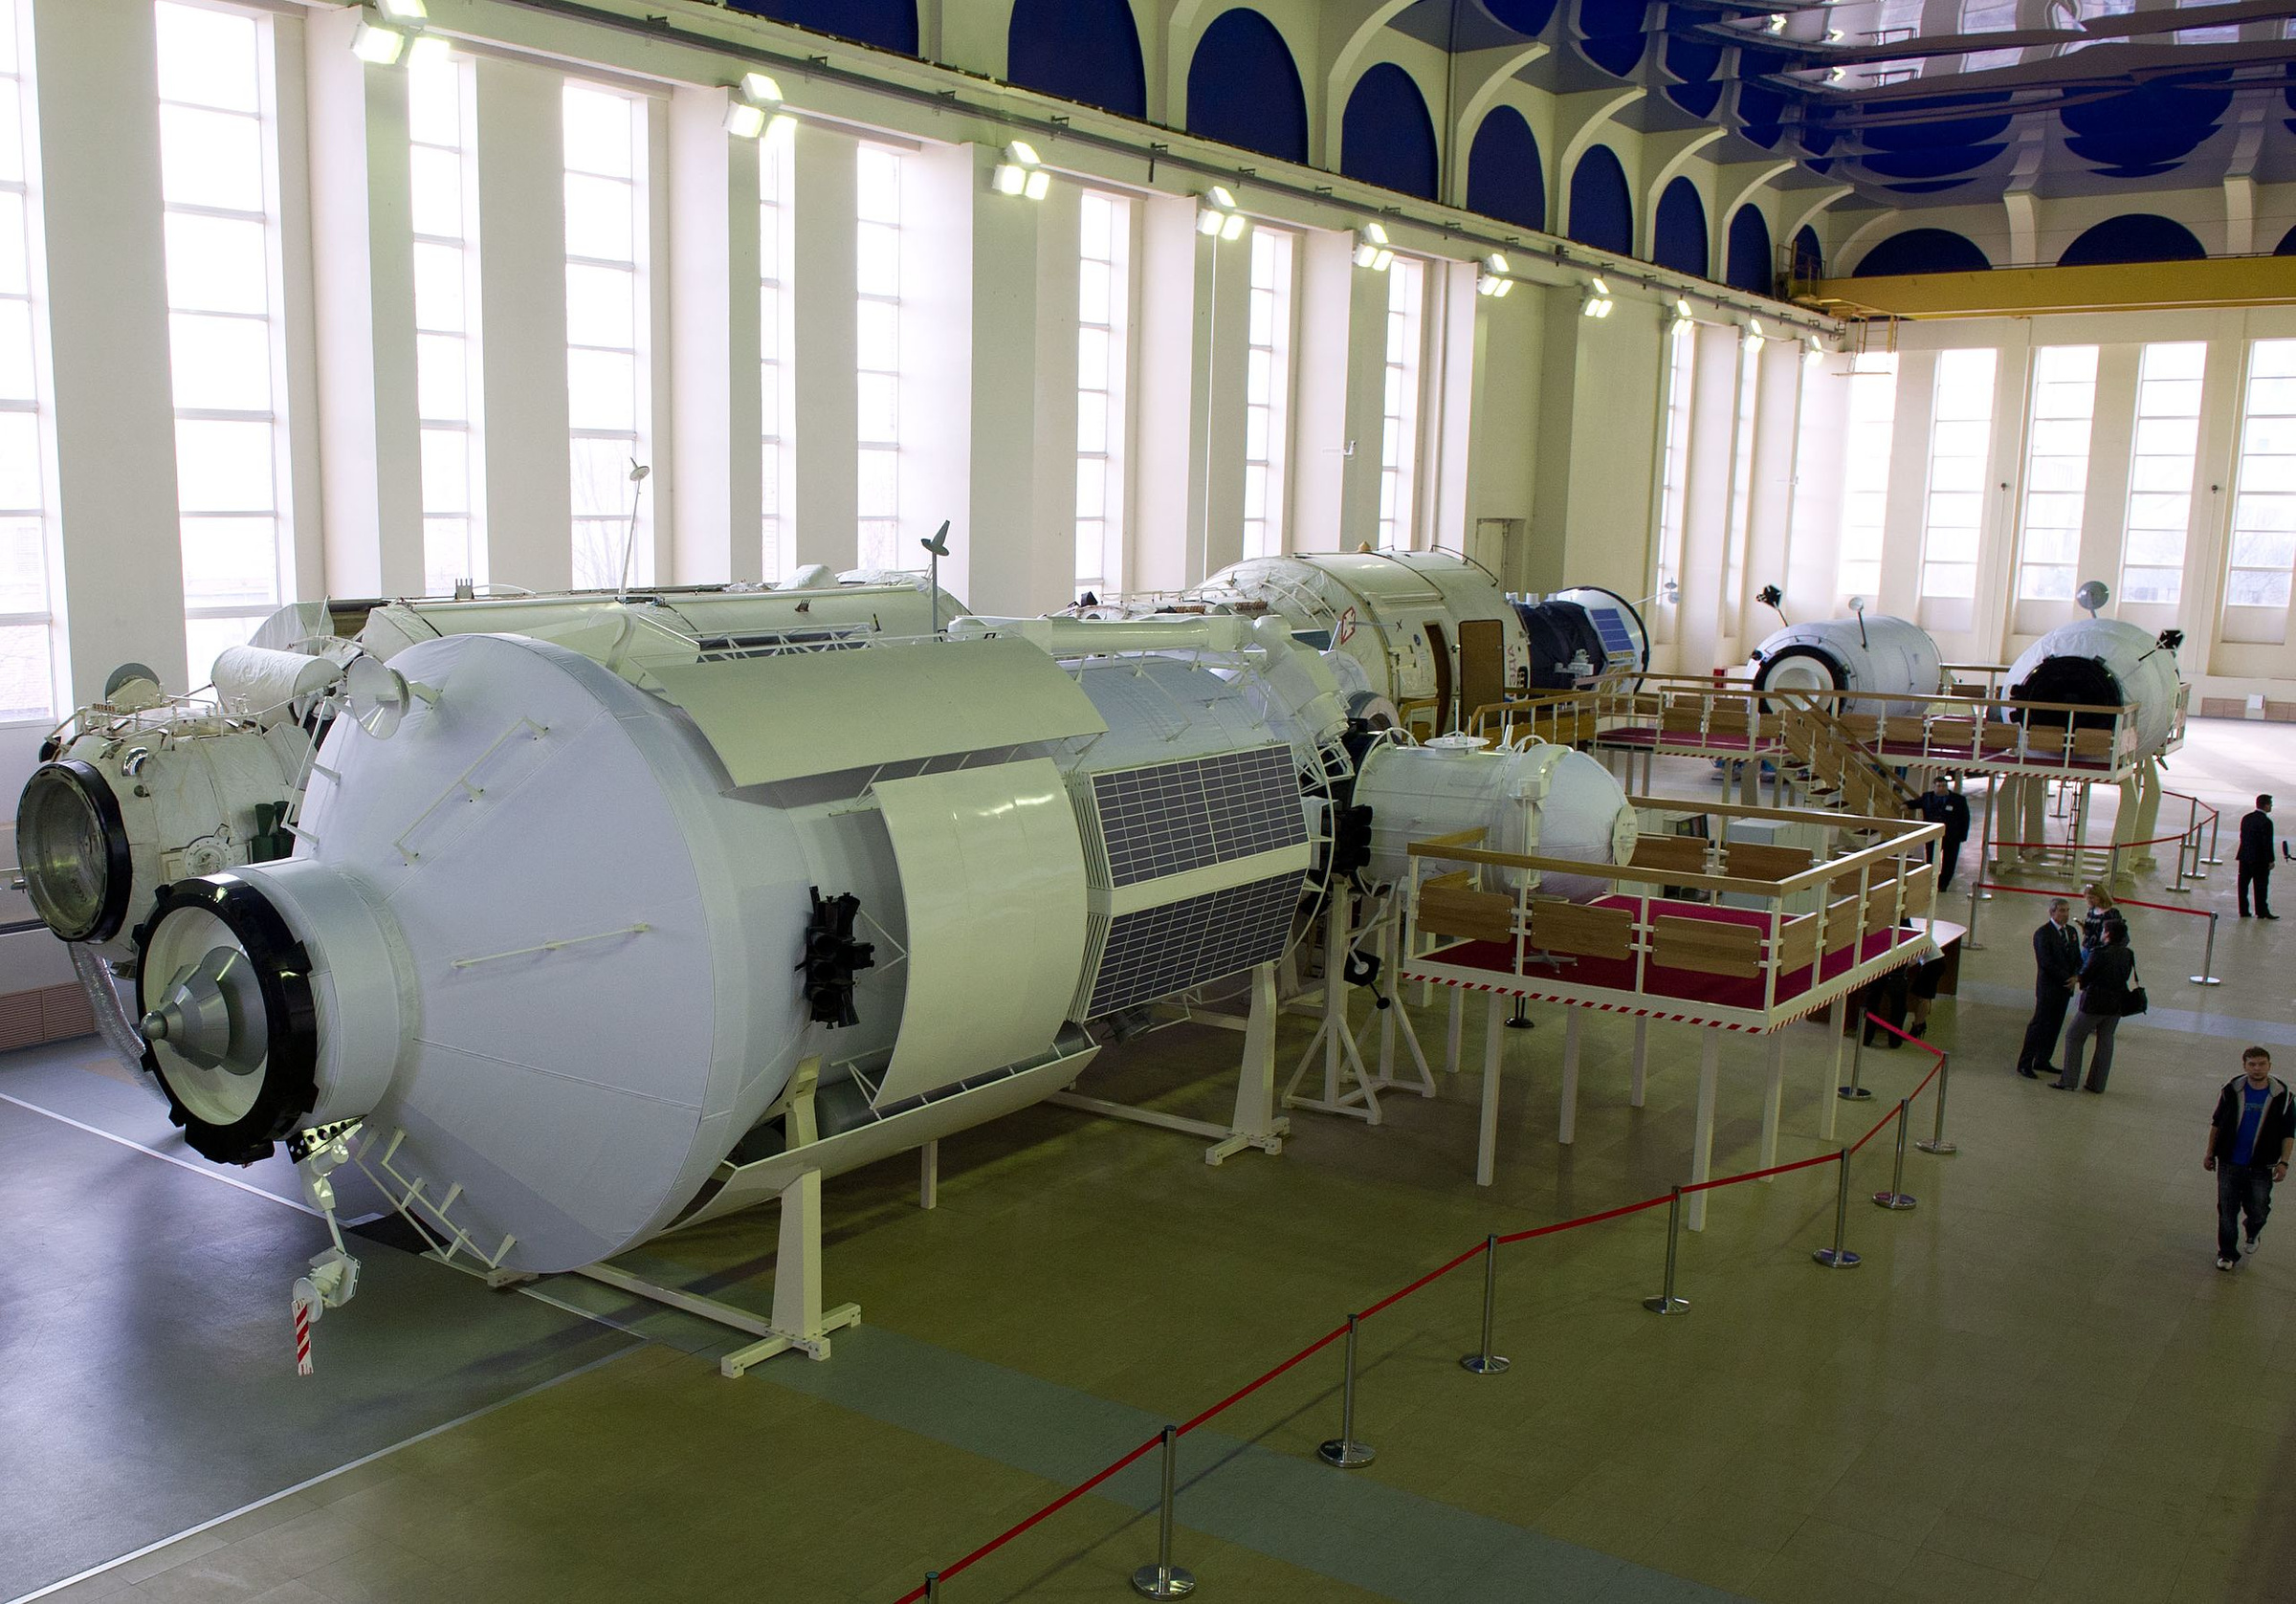 Тренировочный макет модуля "Наука" в Центре подготовки космонавтов. Фото © Wikipedia